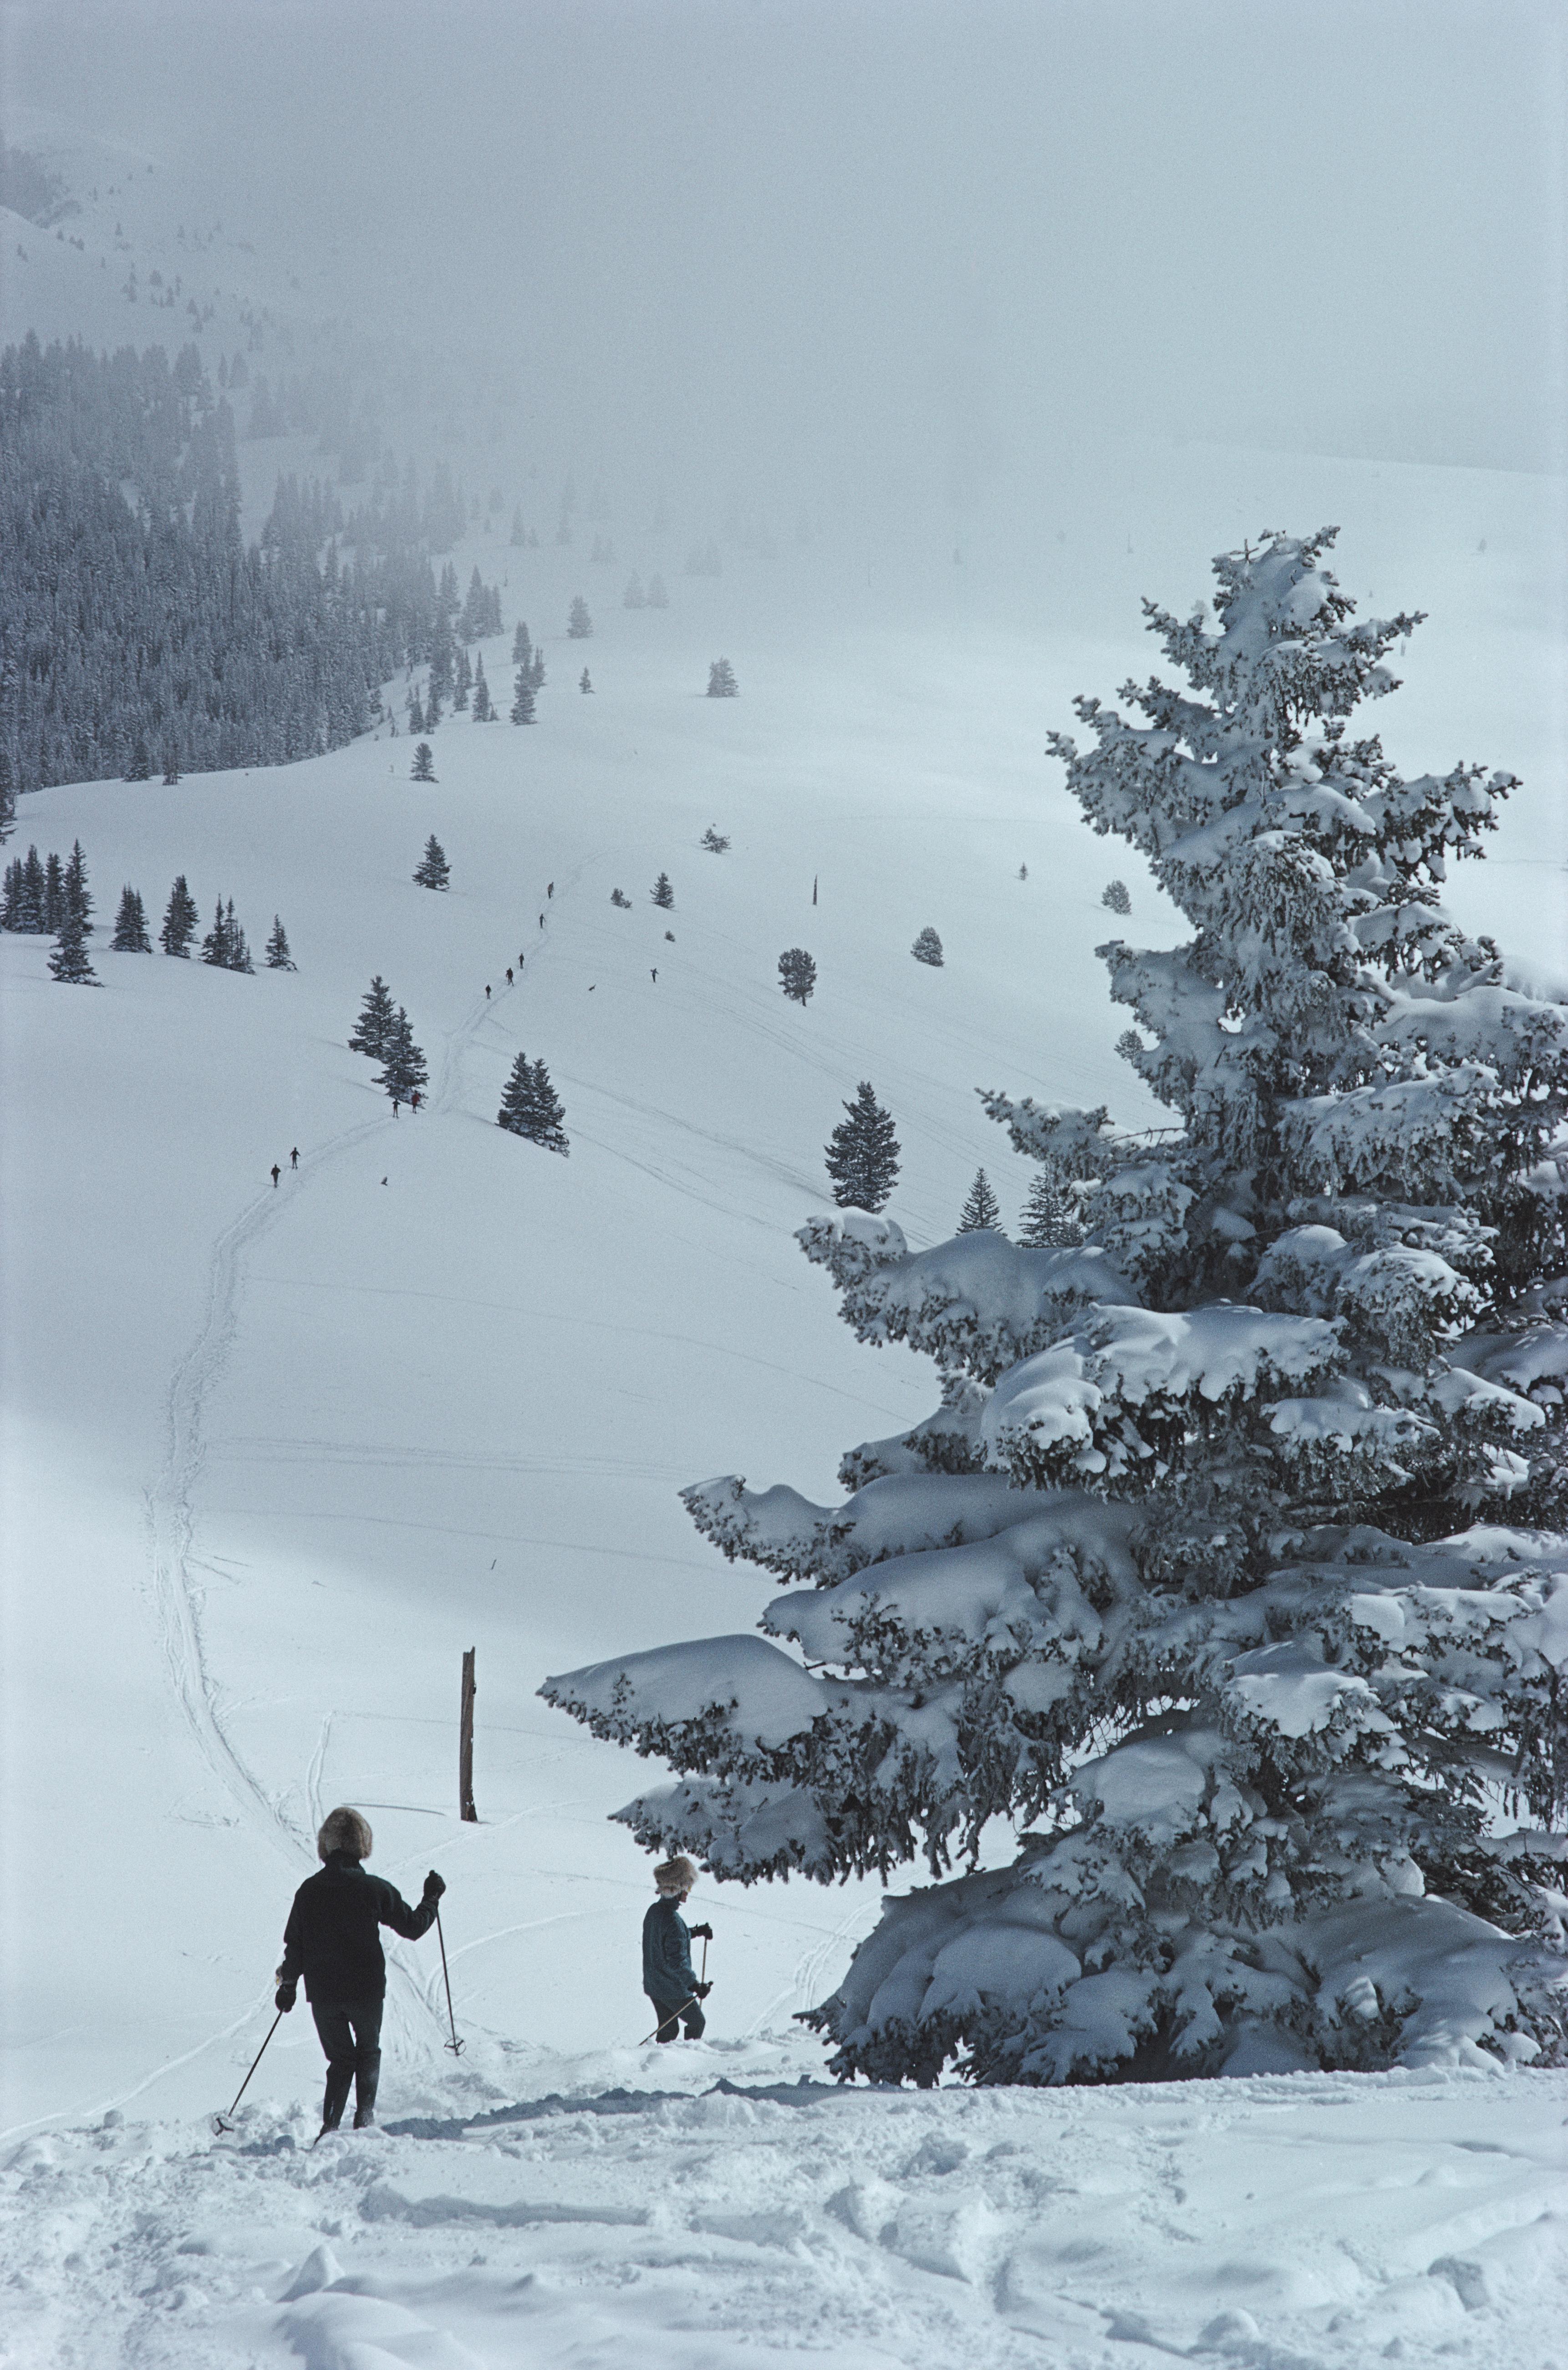 Des skieurs passent devant un arbre couvert de neige à Vail, Colorado, États-Unis, 1964

Slim Aarons
Ski à Vail, 1964
Impression Lambda
4 tailles disponibles
Slim Aarons Estate Edition

60 x 40 pouces
$3950

40 x 30 pouces
$3350

30 x 20